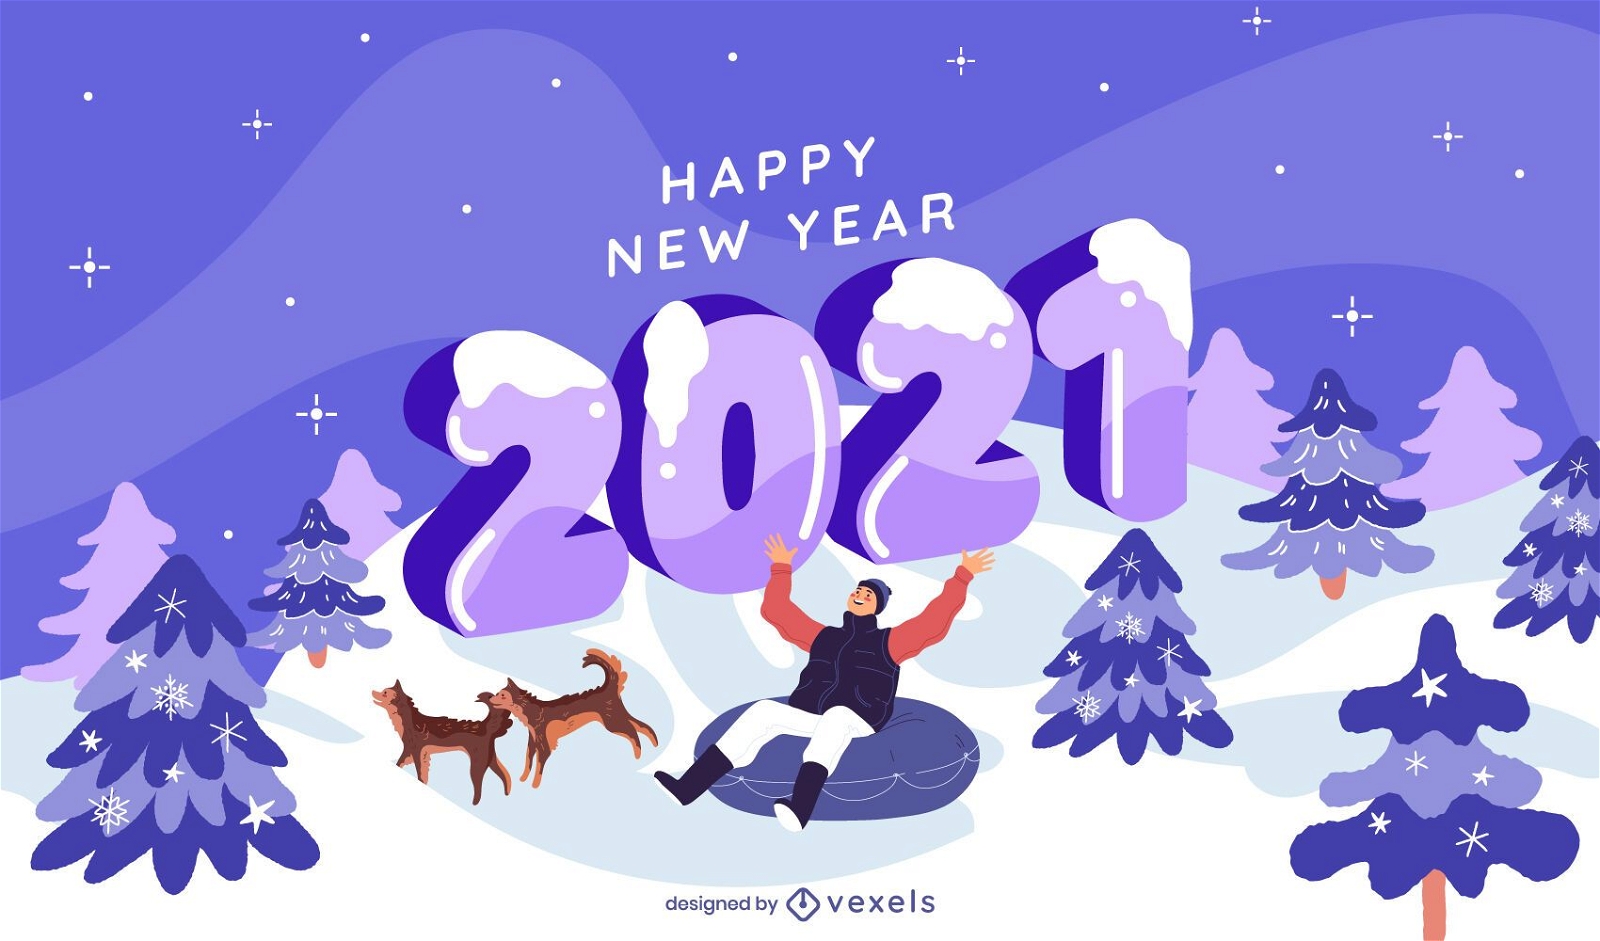 Winterillustrationsdesign des neuen Jahres 2021